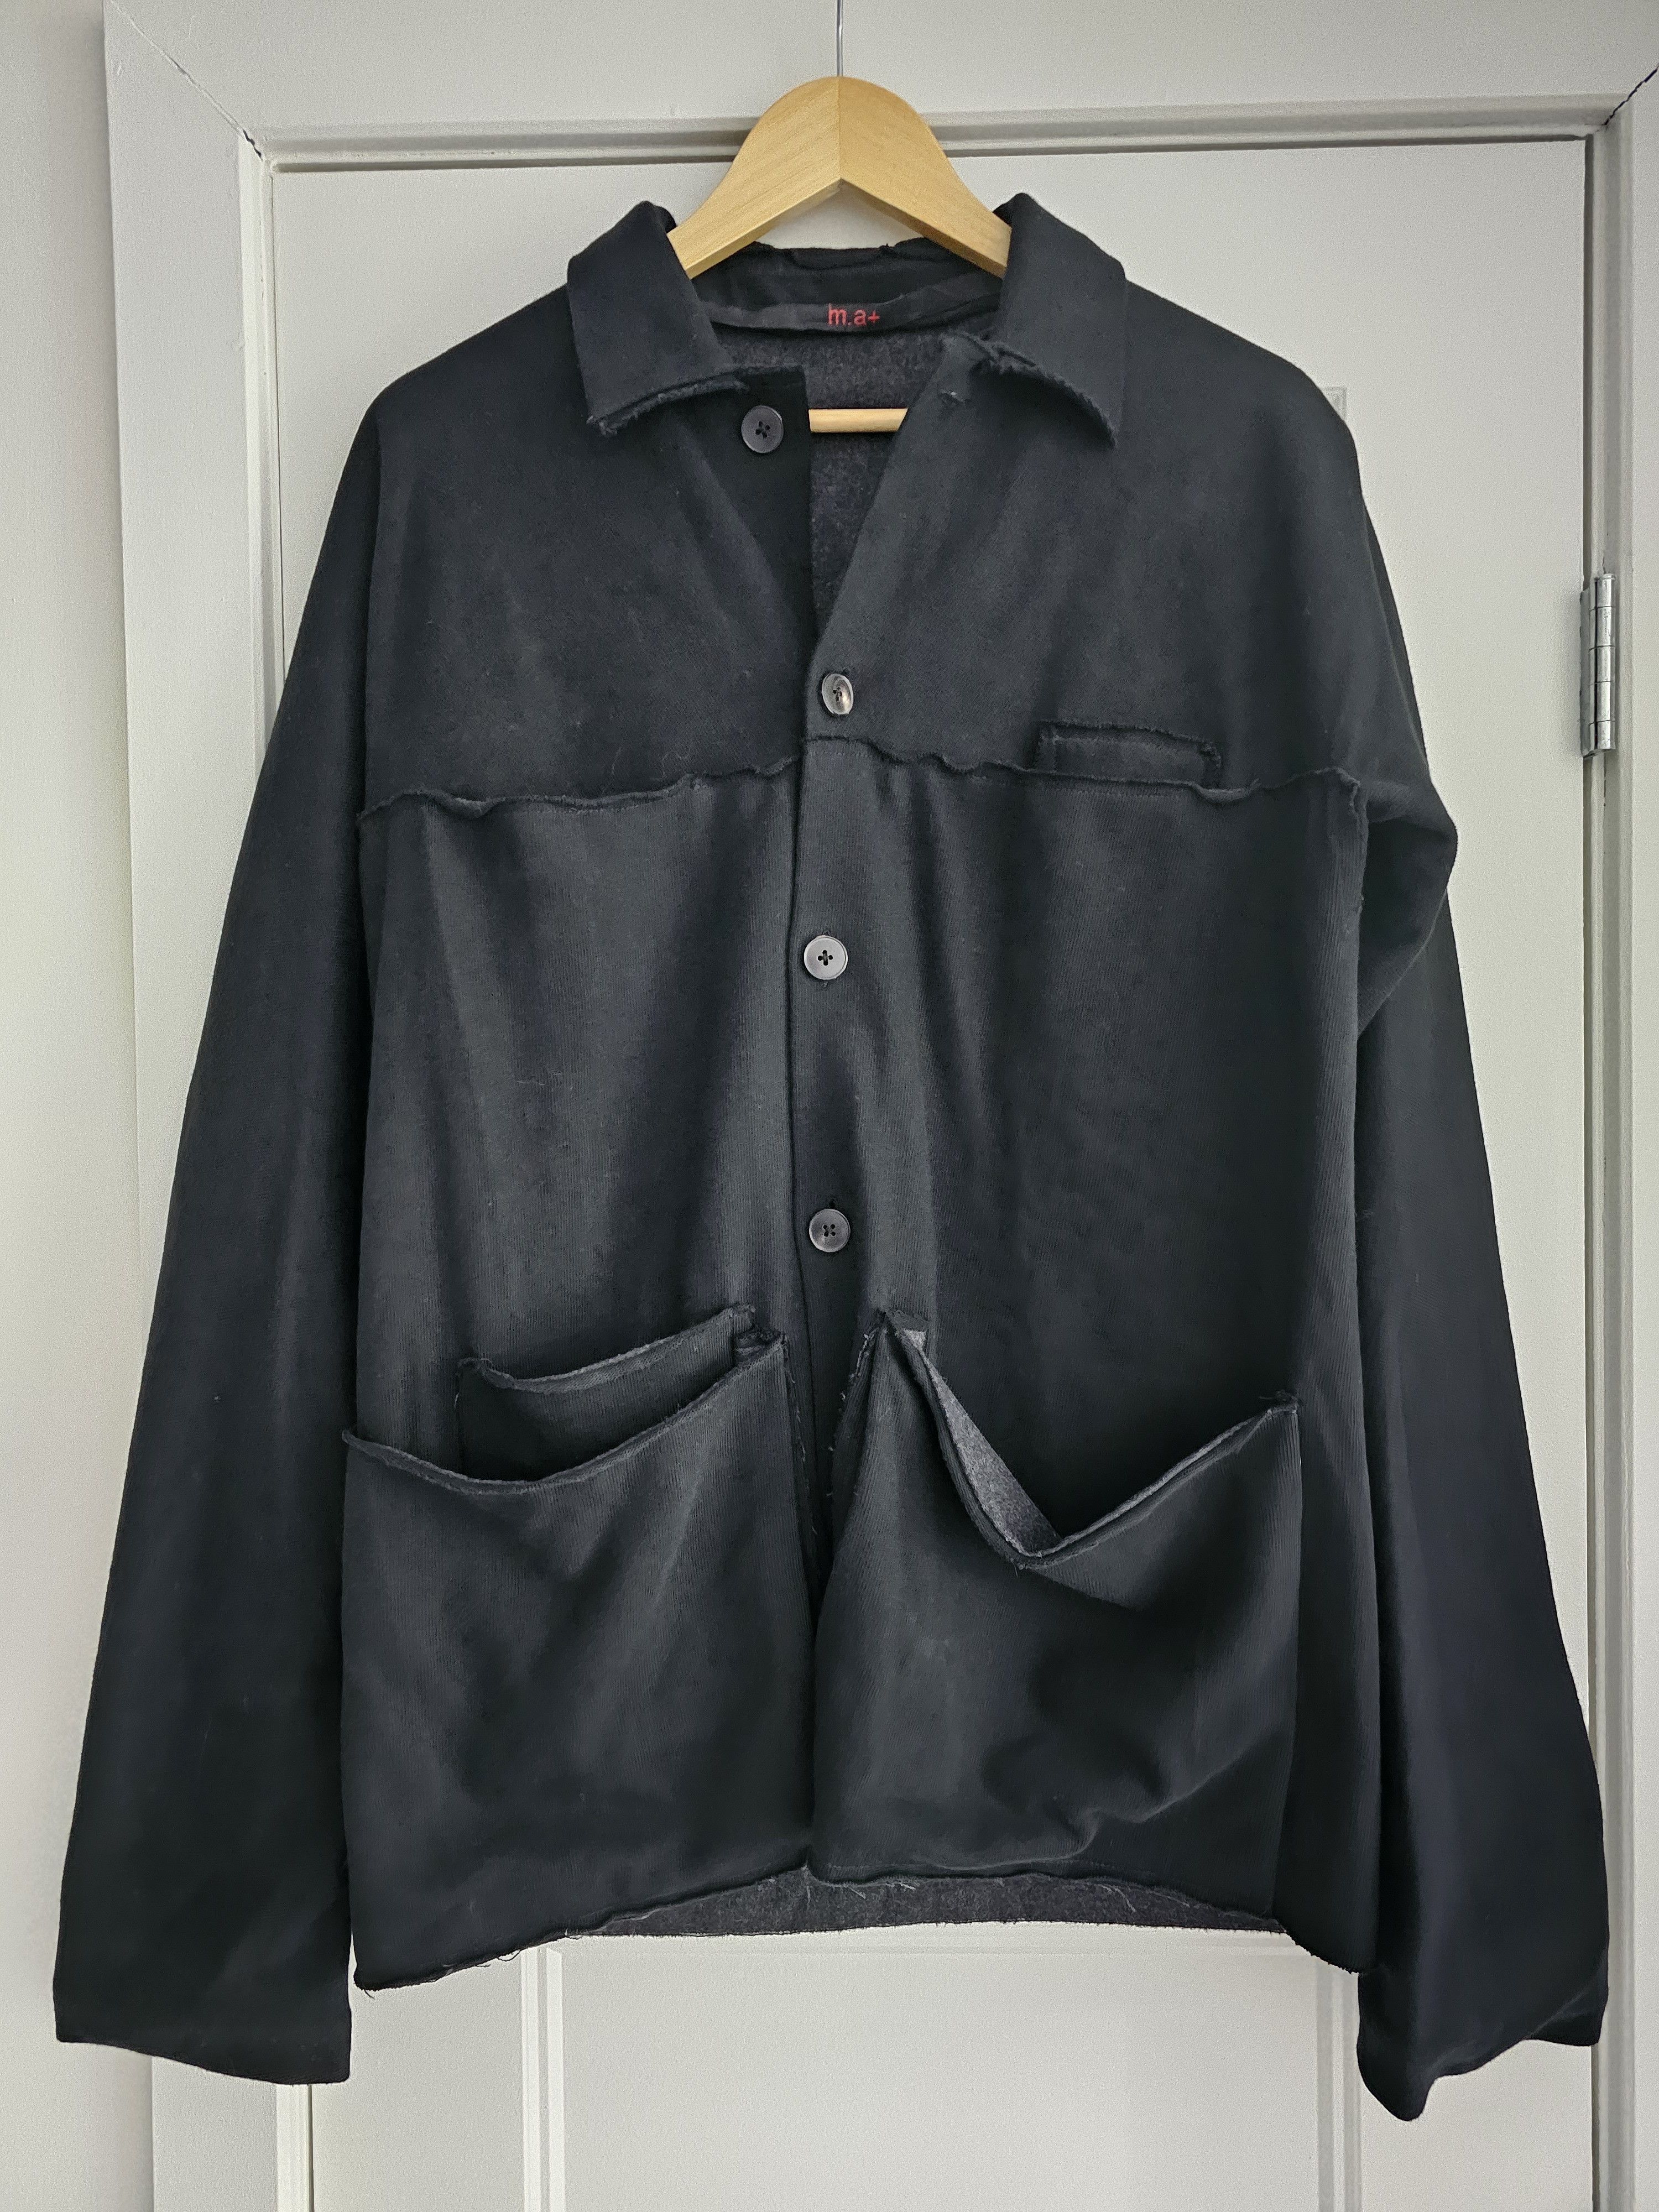 Ma+ Ma+ Lined jacket | Grailed